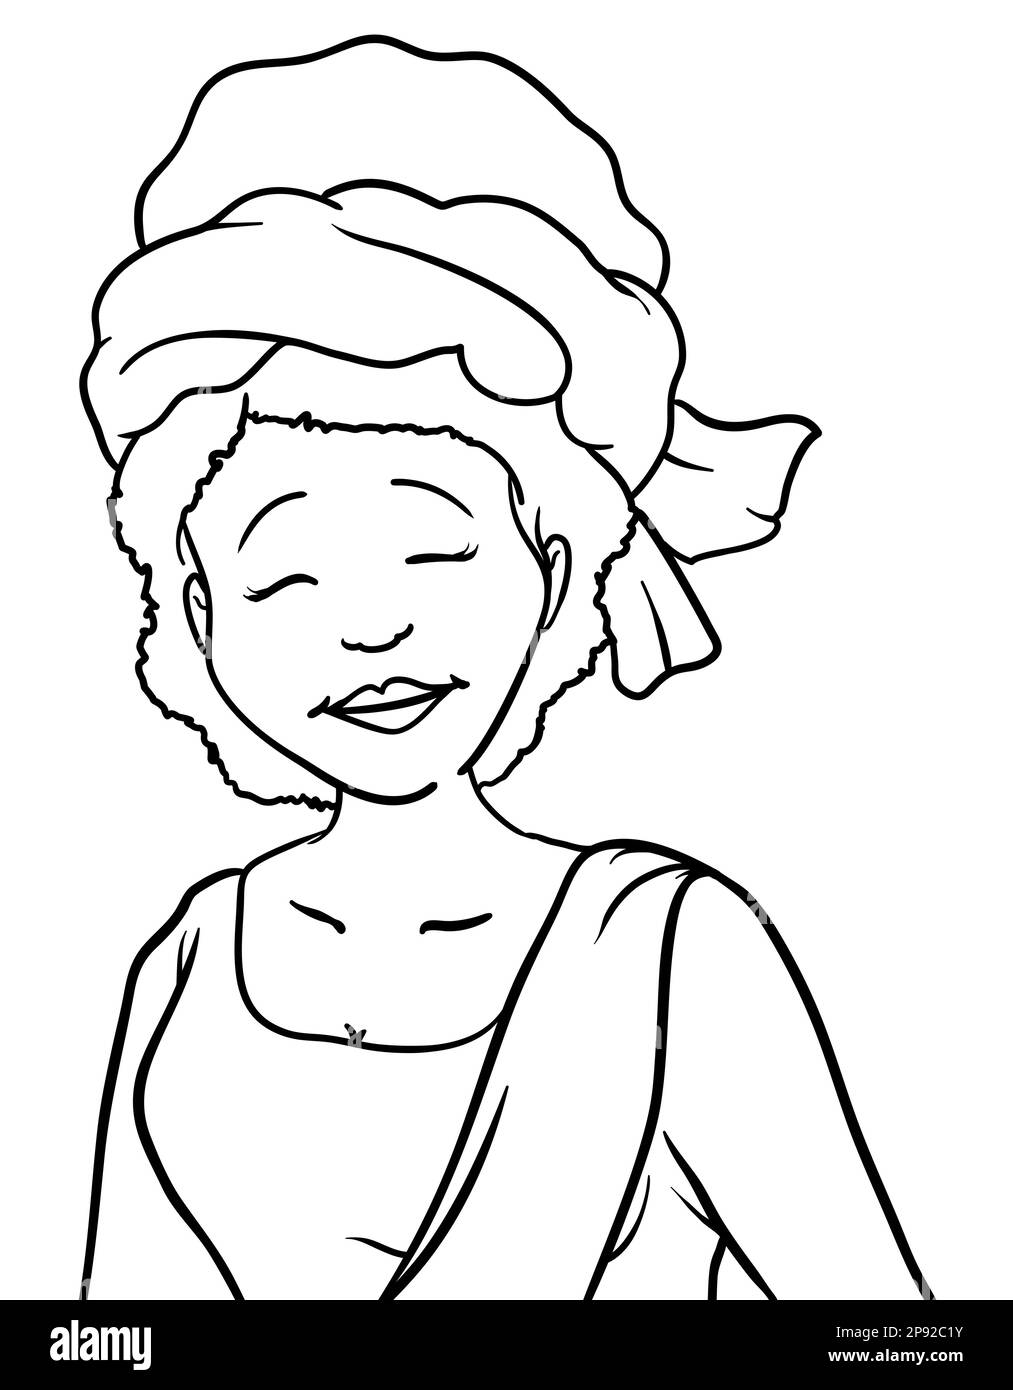 Afrikanische Frau mit fröhlicher Geste, Turban und traditionellem Kleid mit Schärpe. Hochformat in Konturen auf weißem Hintergrund. Stock Vektor